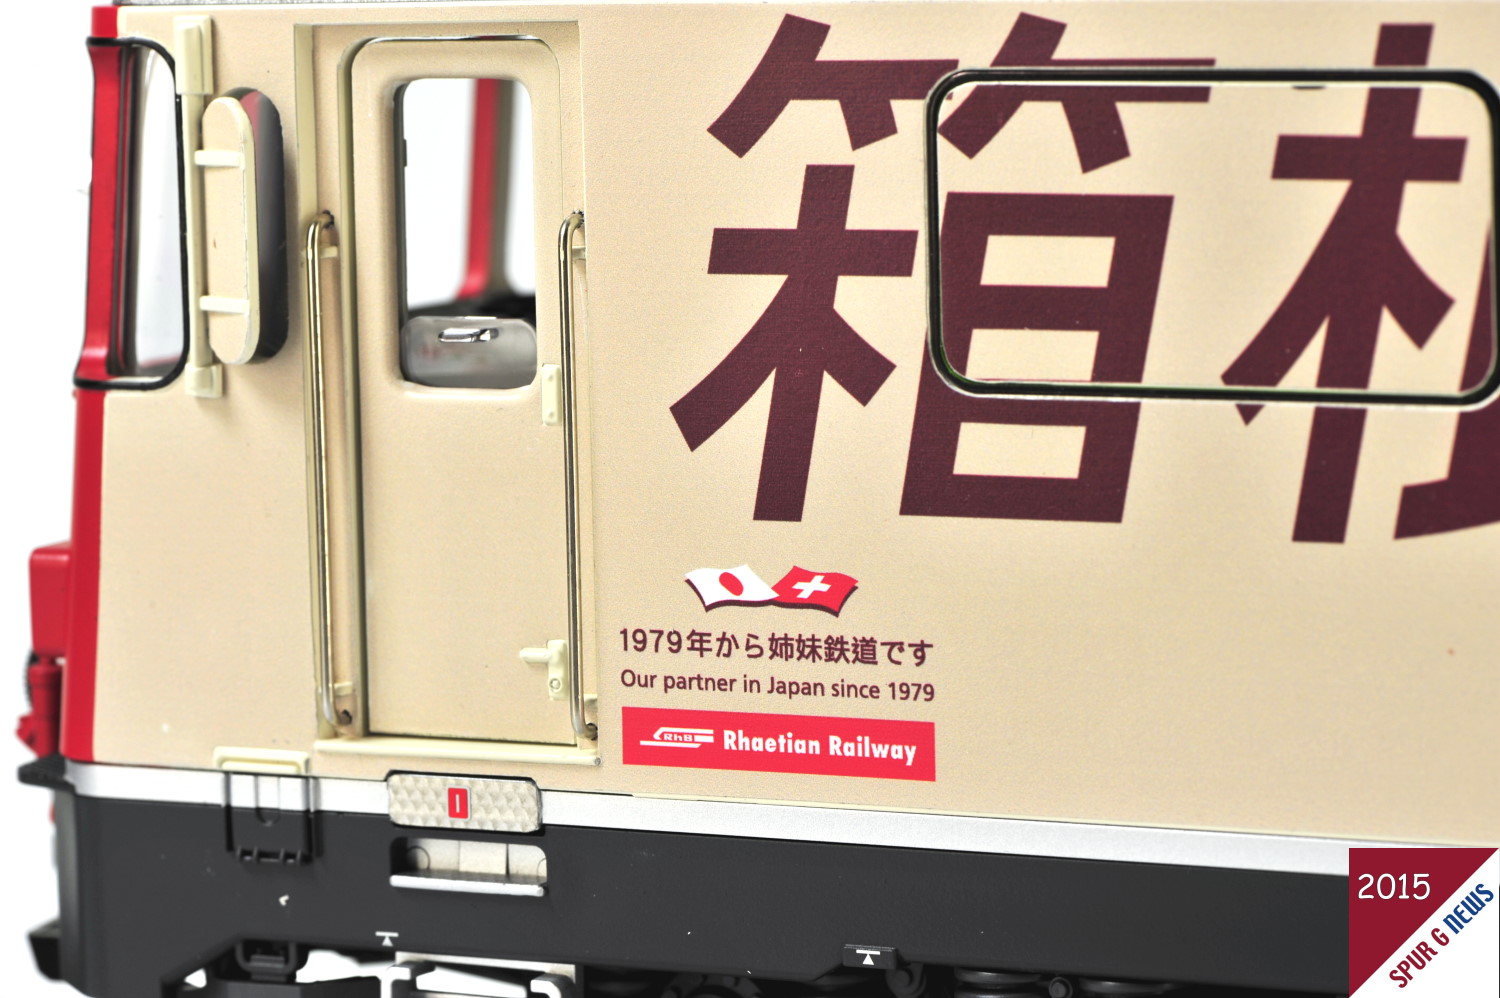 Auf der anderen Seite der Lokomotive ist die Partnerschaft von Japan zur Schweiz dokumentiert. Seit 1979 ist der Bund Japan-Schweiz schon besiegelt. 